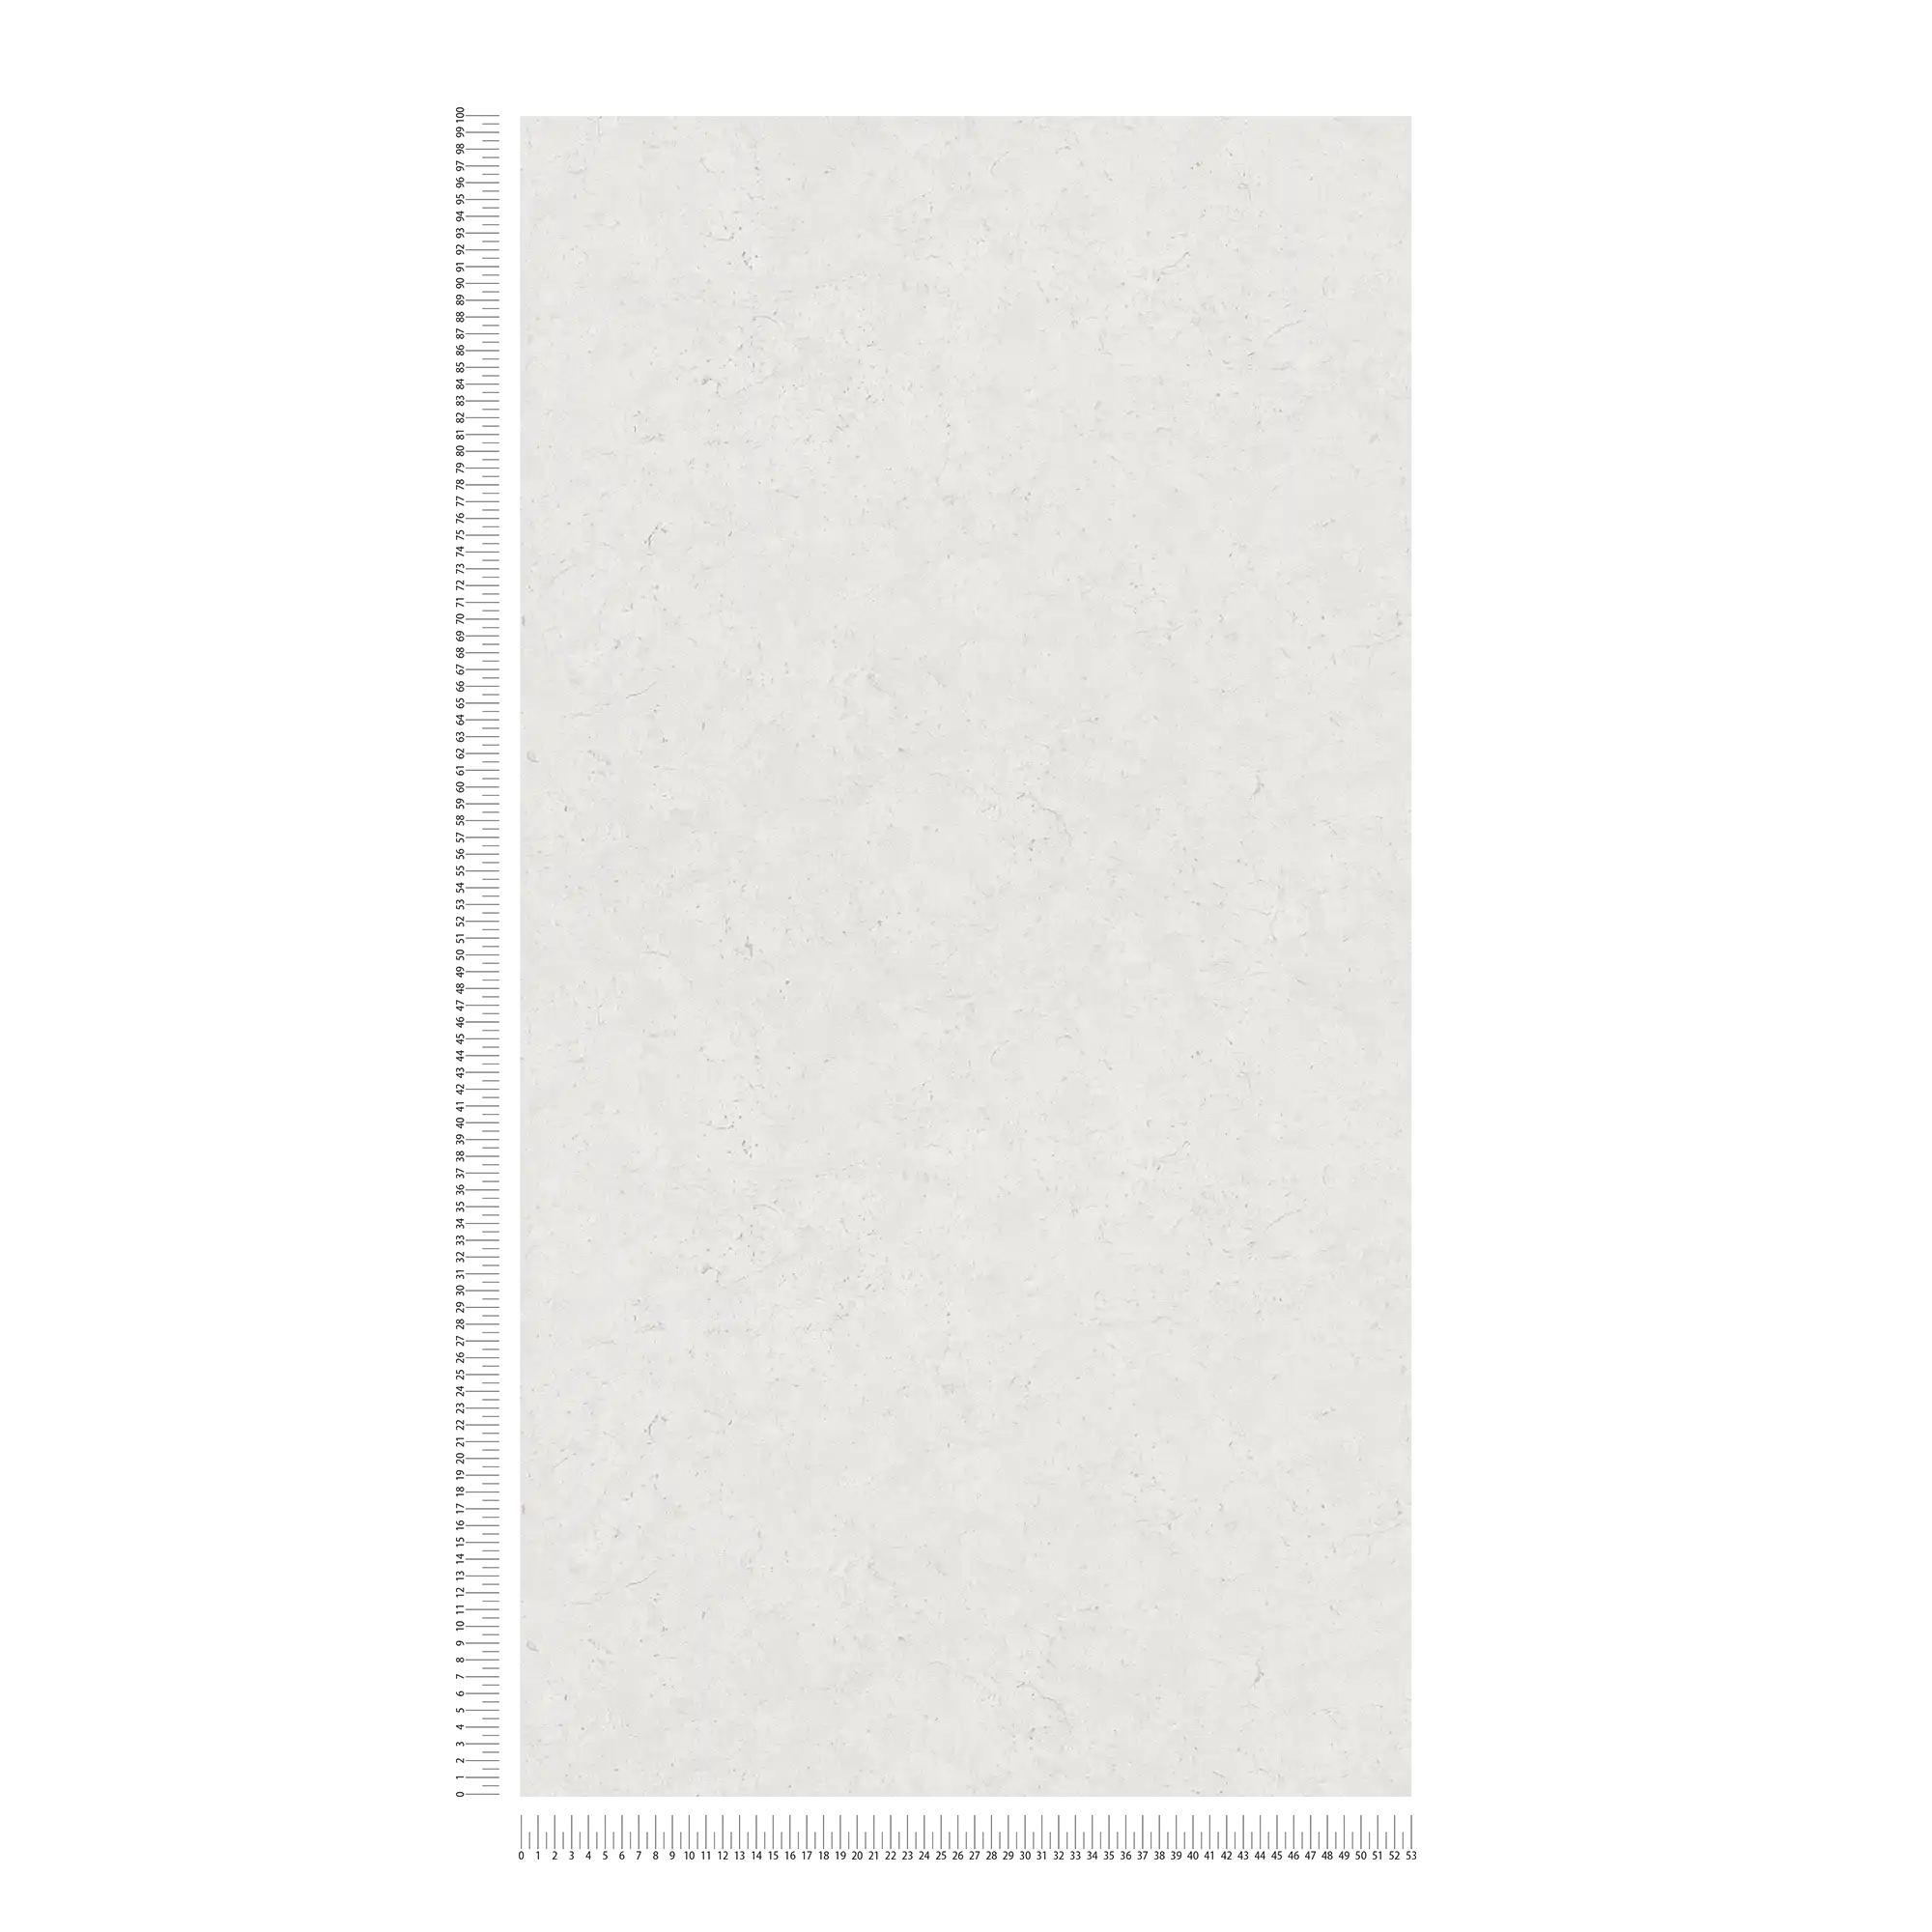             Carta da parati in tessuto non tessuto a tinta unita con effetto cemento - grigio, bianco
        